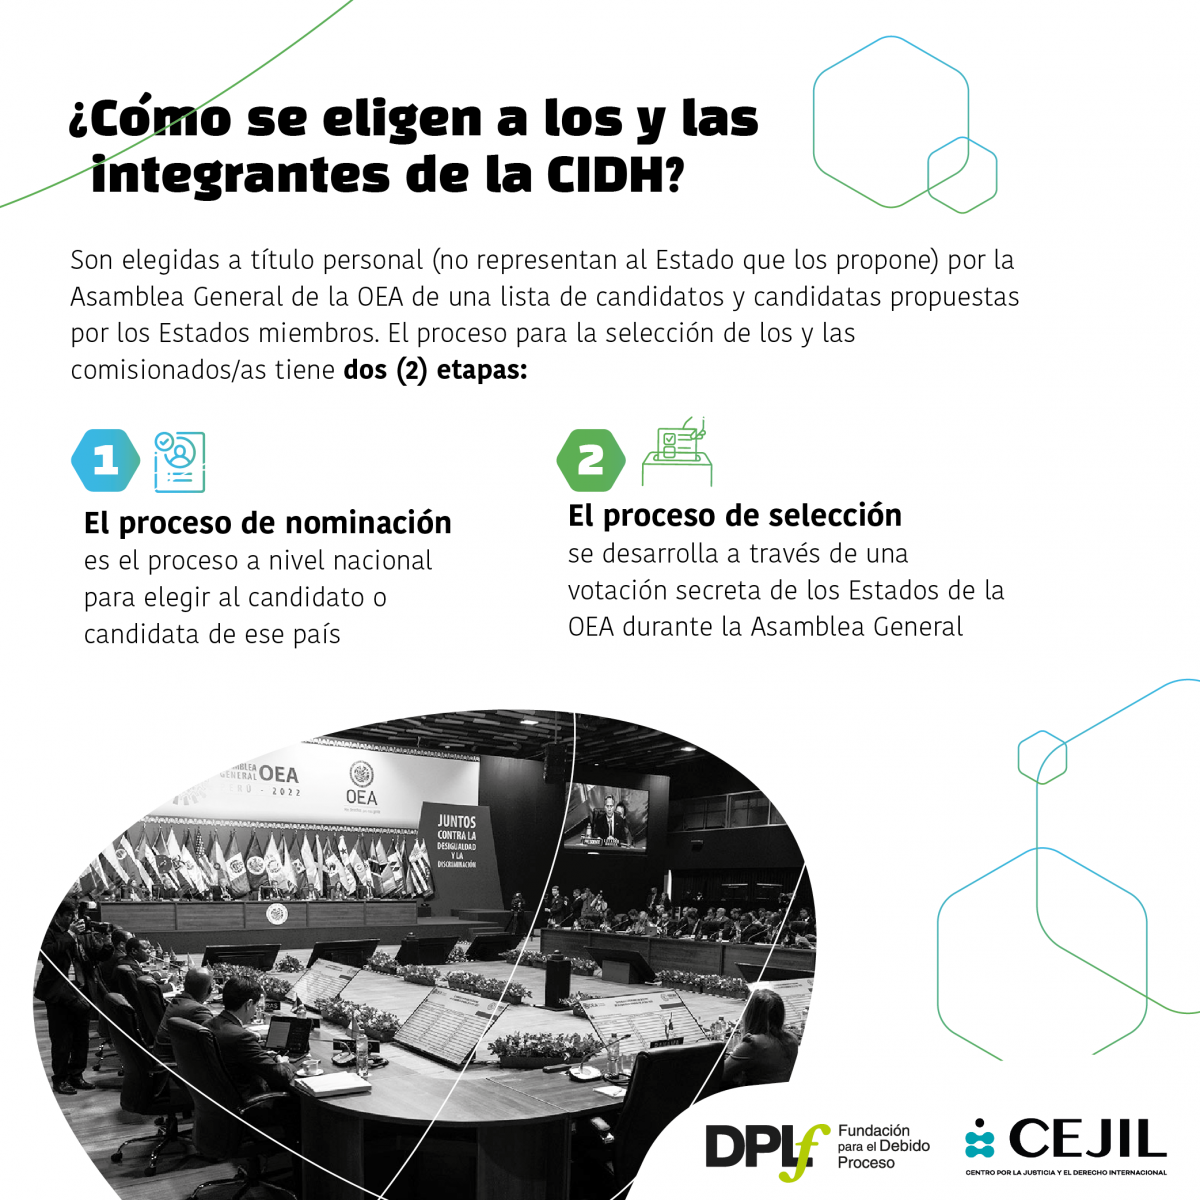 Infografía sobre proceso de selección de personas comisionadas de la CIDH. ¿Cómo se eligen a los y la integrantes de la CIDH?